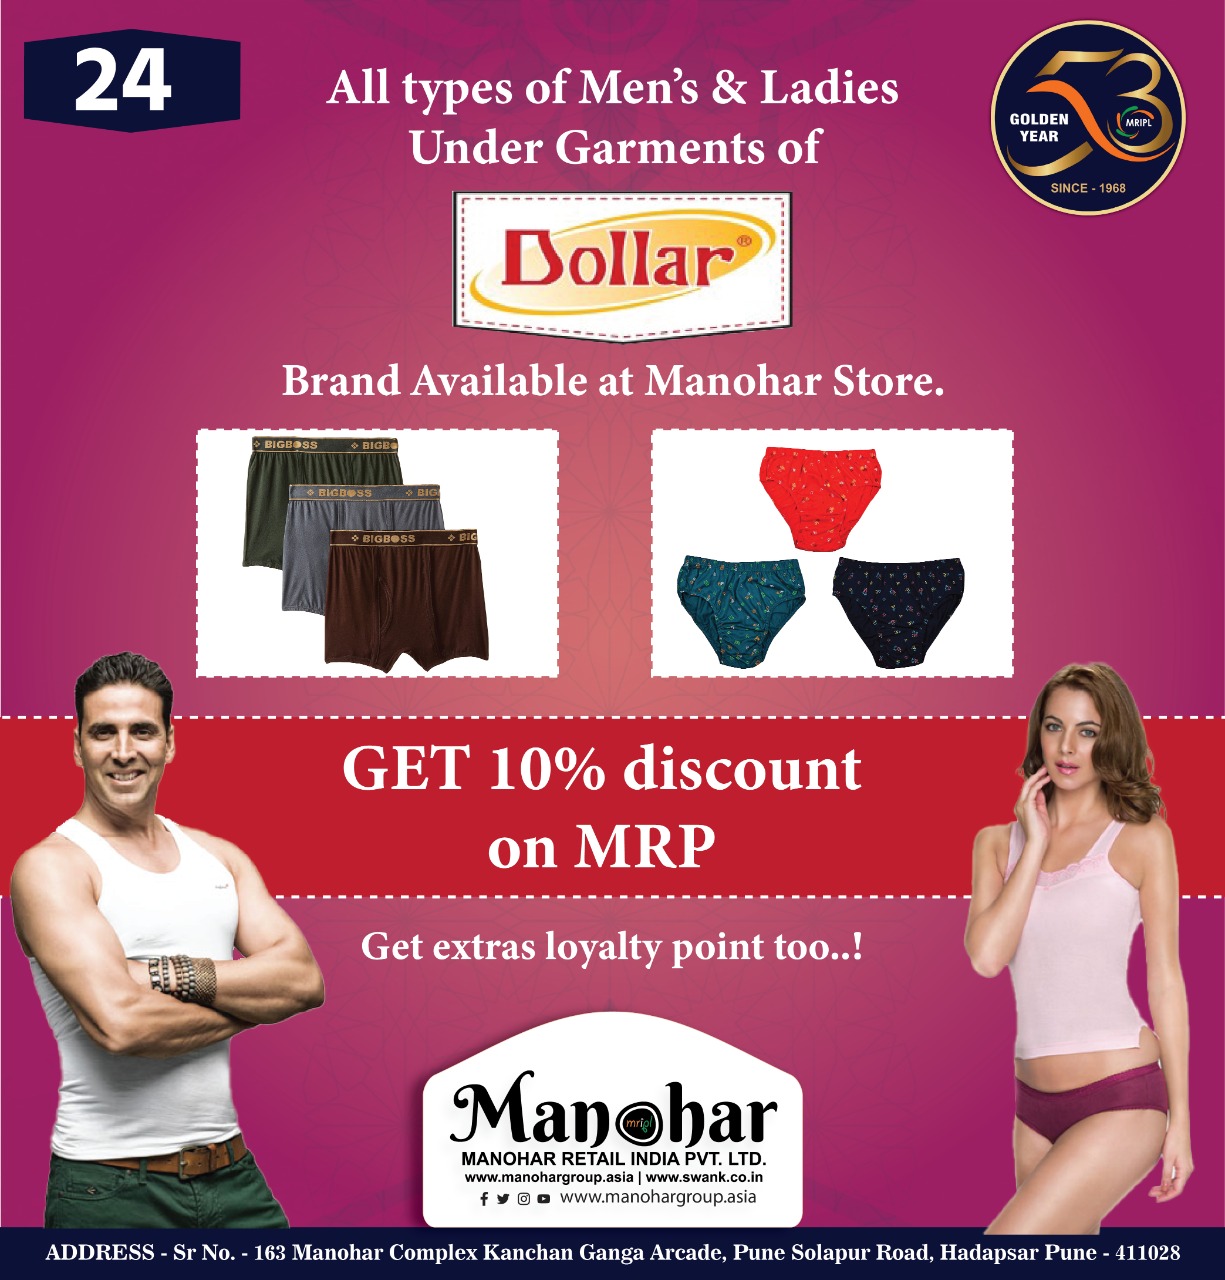 Manohar Retail India auf X: „All types of Men's & Ladies